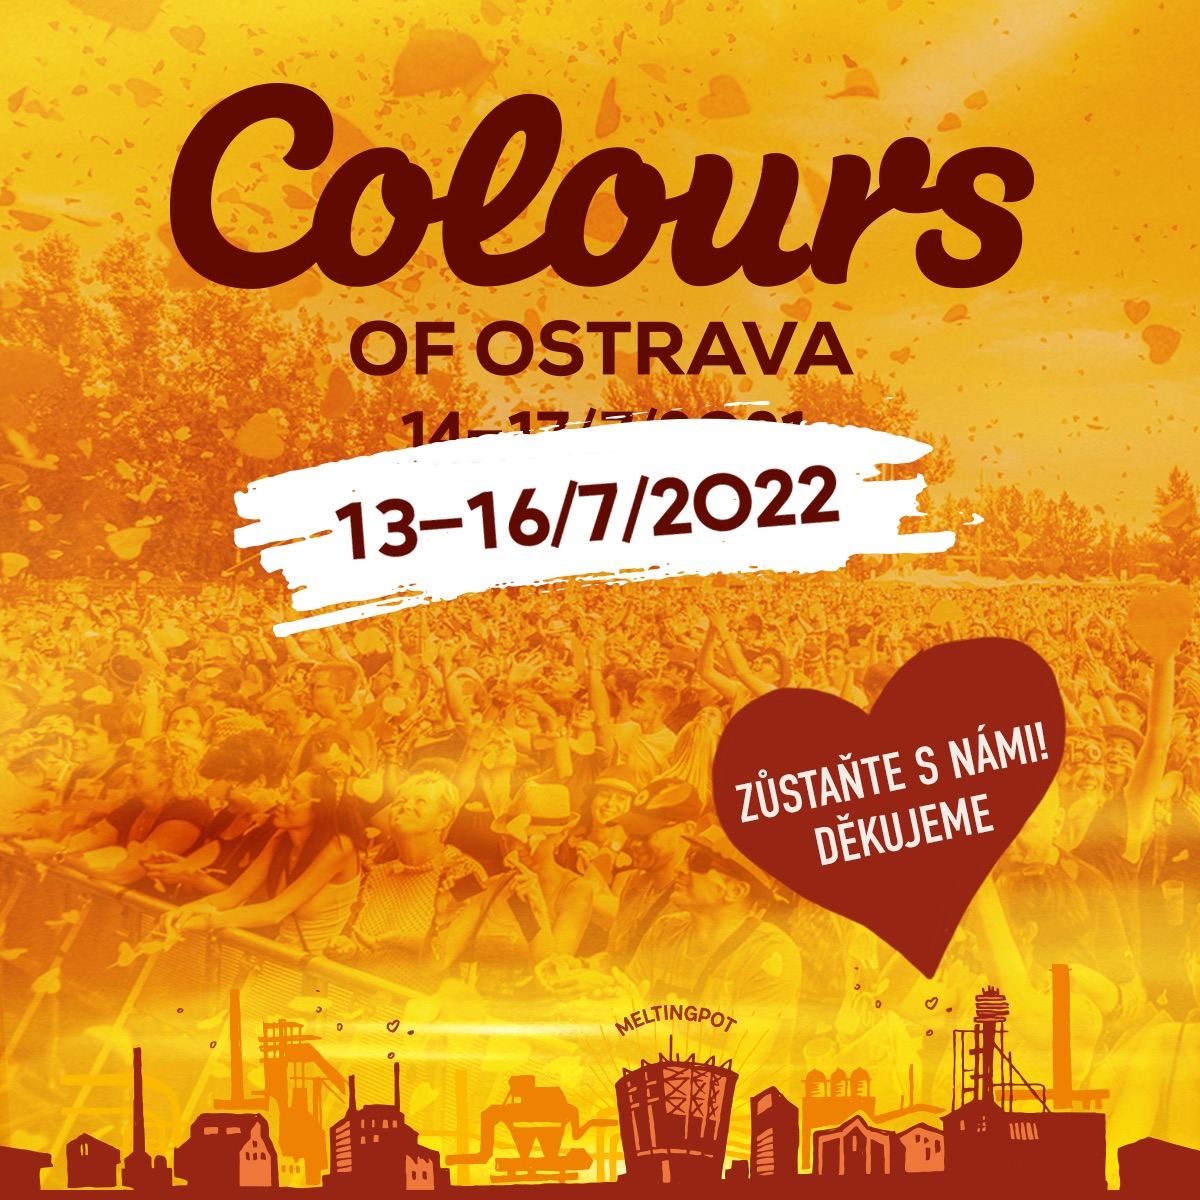 Festival Colours of Ostrava sa presúva na júl 2022, vstupenky zostávajú v platnosti